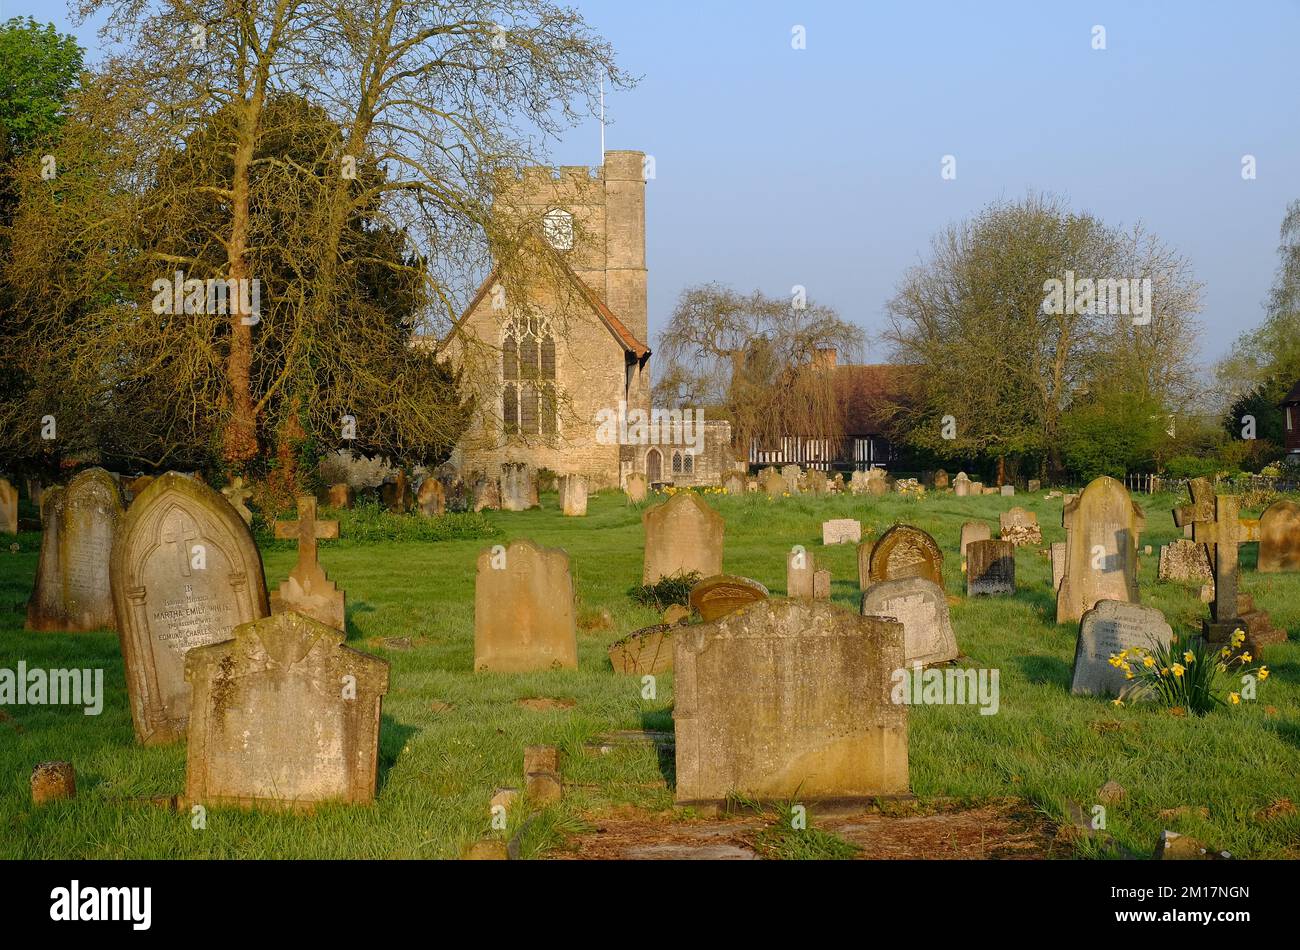 Headcorn : église Saint-Pierre et St-Paul avec cimetière et jonquilles or brillant peu après le lever du soleil à Headcorn, Kent, Angleterre Banque D'Images